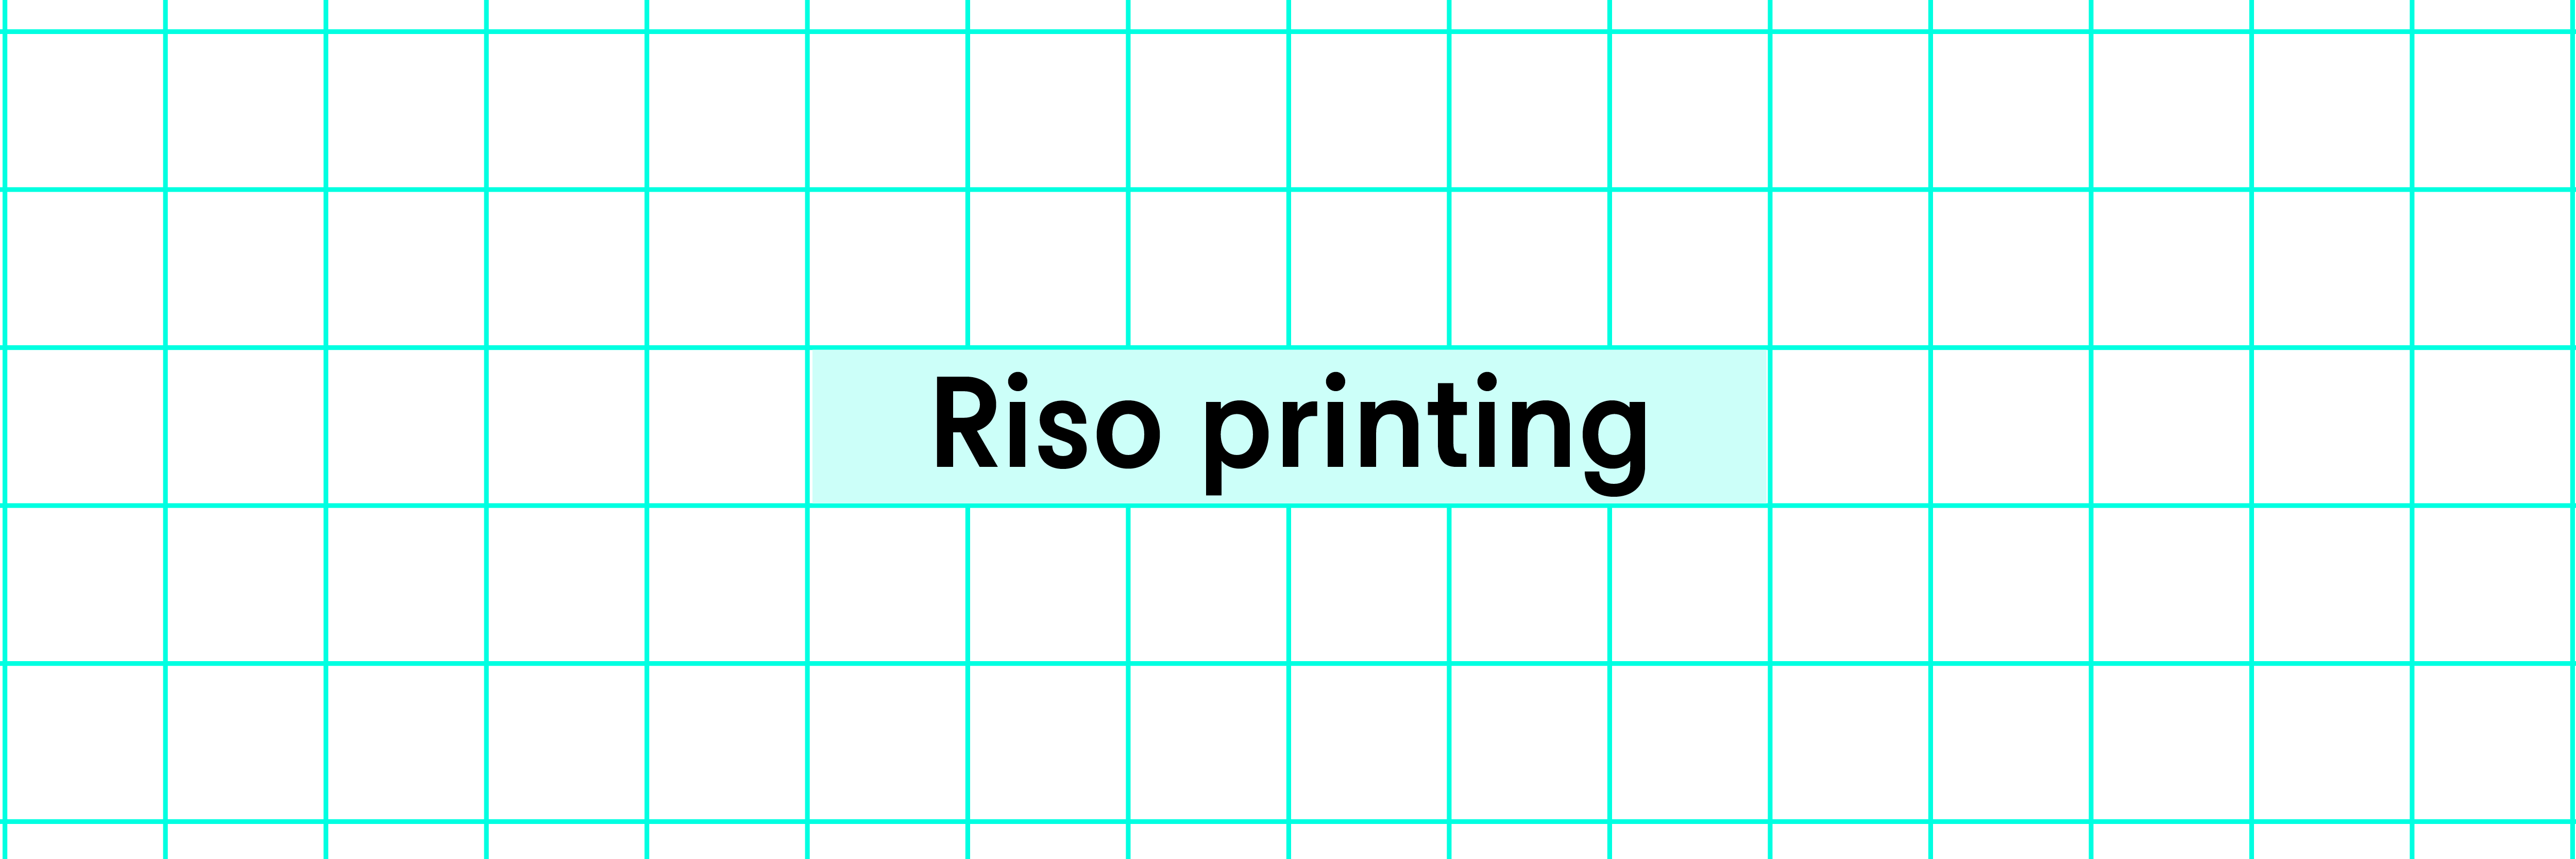 Riso printing